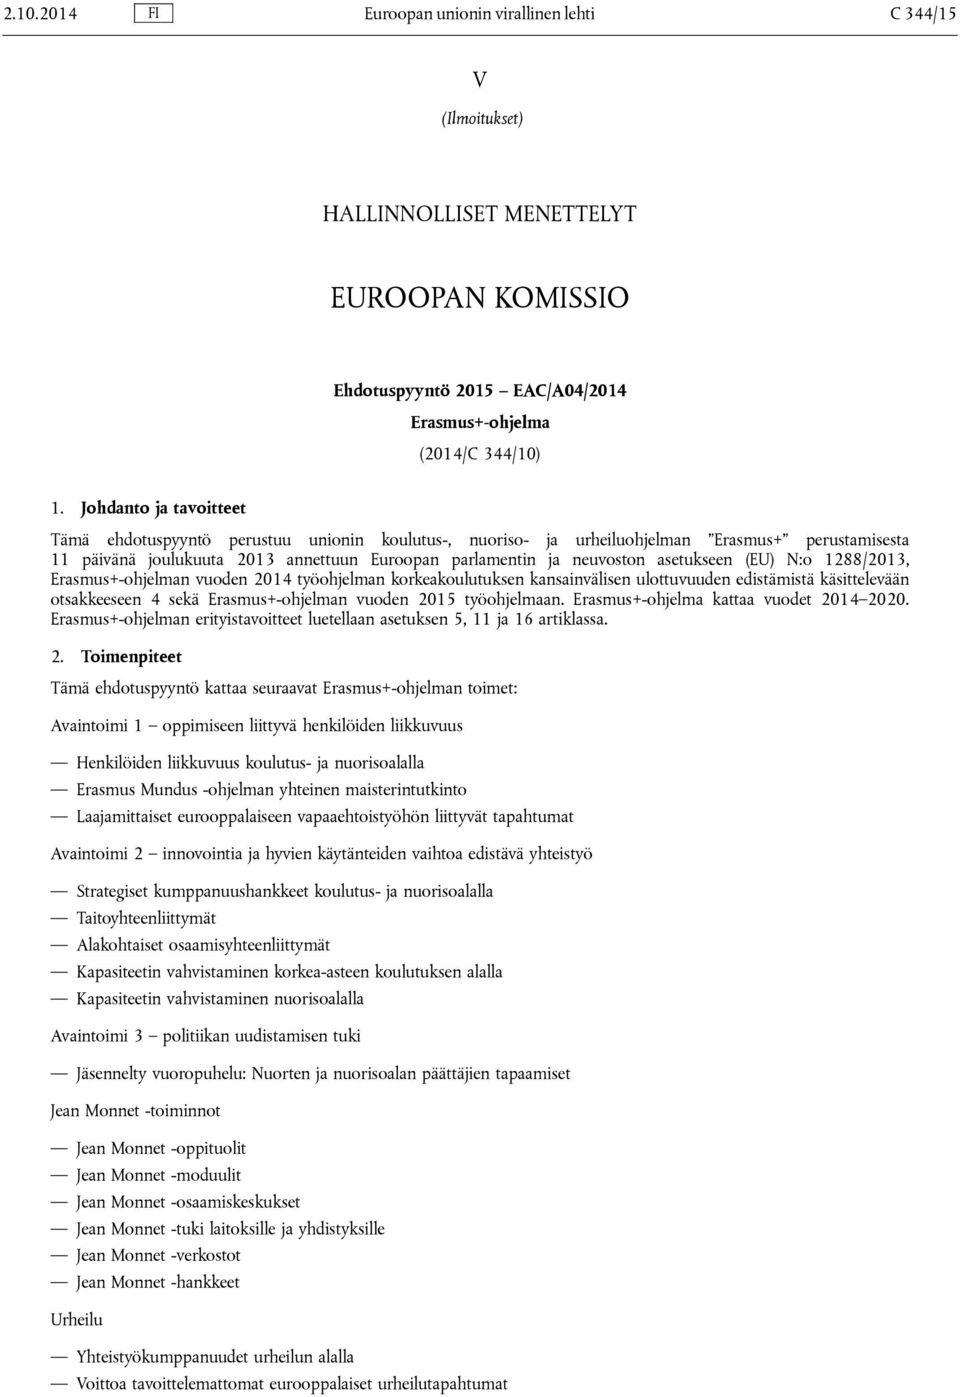 asetukseen (EU) N:o 1288/2013, Erasmus+-ohjelman vuoden 2014 työohjelman korkeakoulutuksen kansainvälisen ulottuvuuden edistämistä käsittelevään otsakkeeseen 4 sekä Erasmus+-ohjelman vuoden 2015